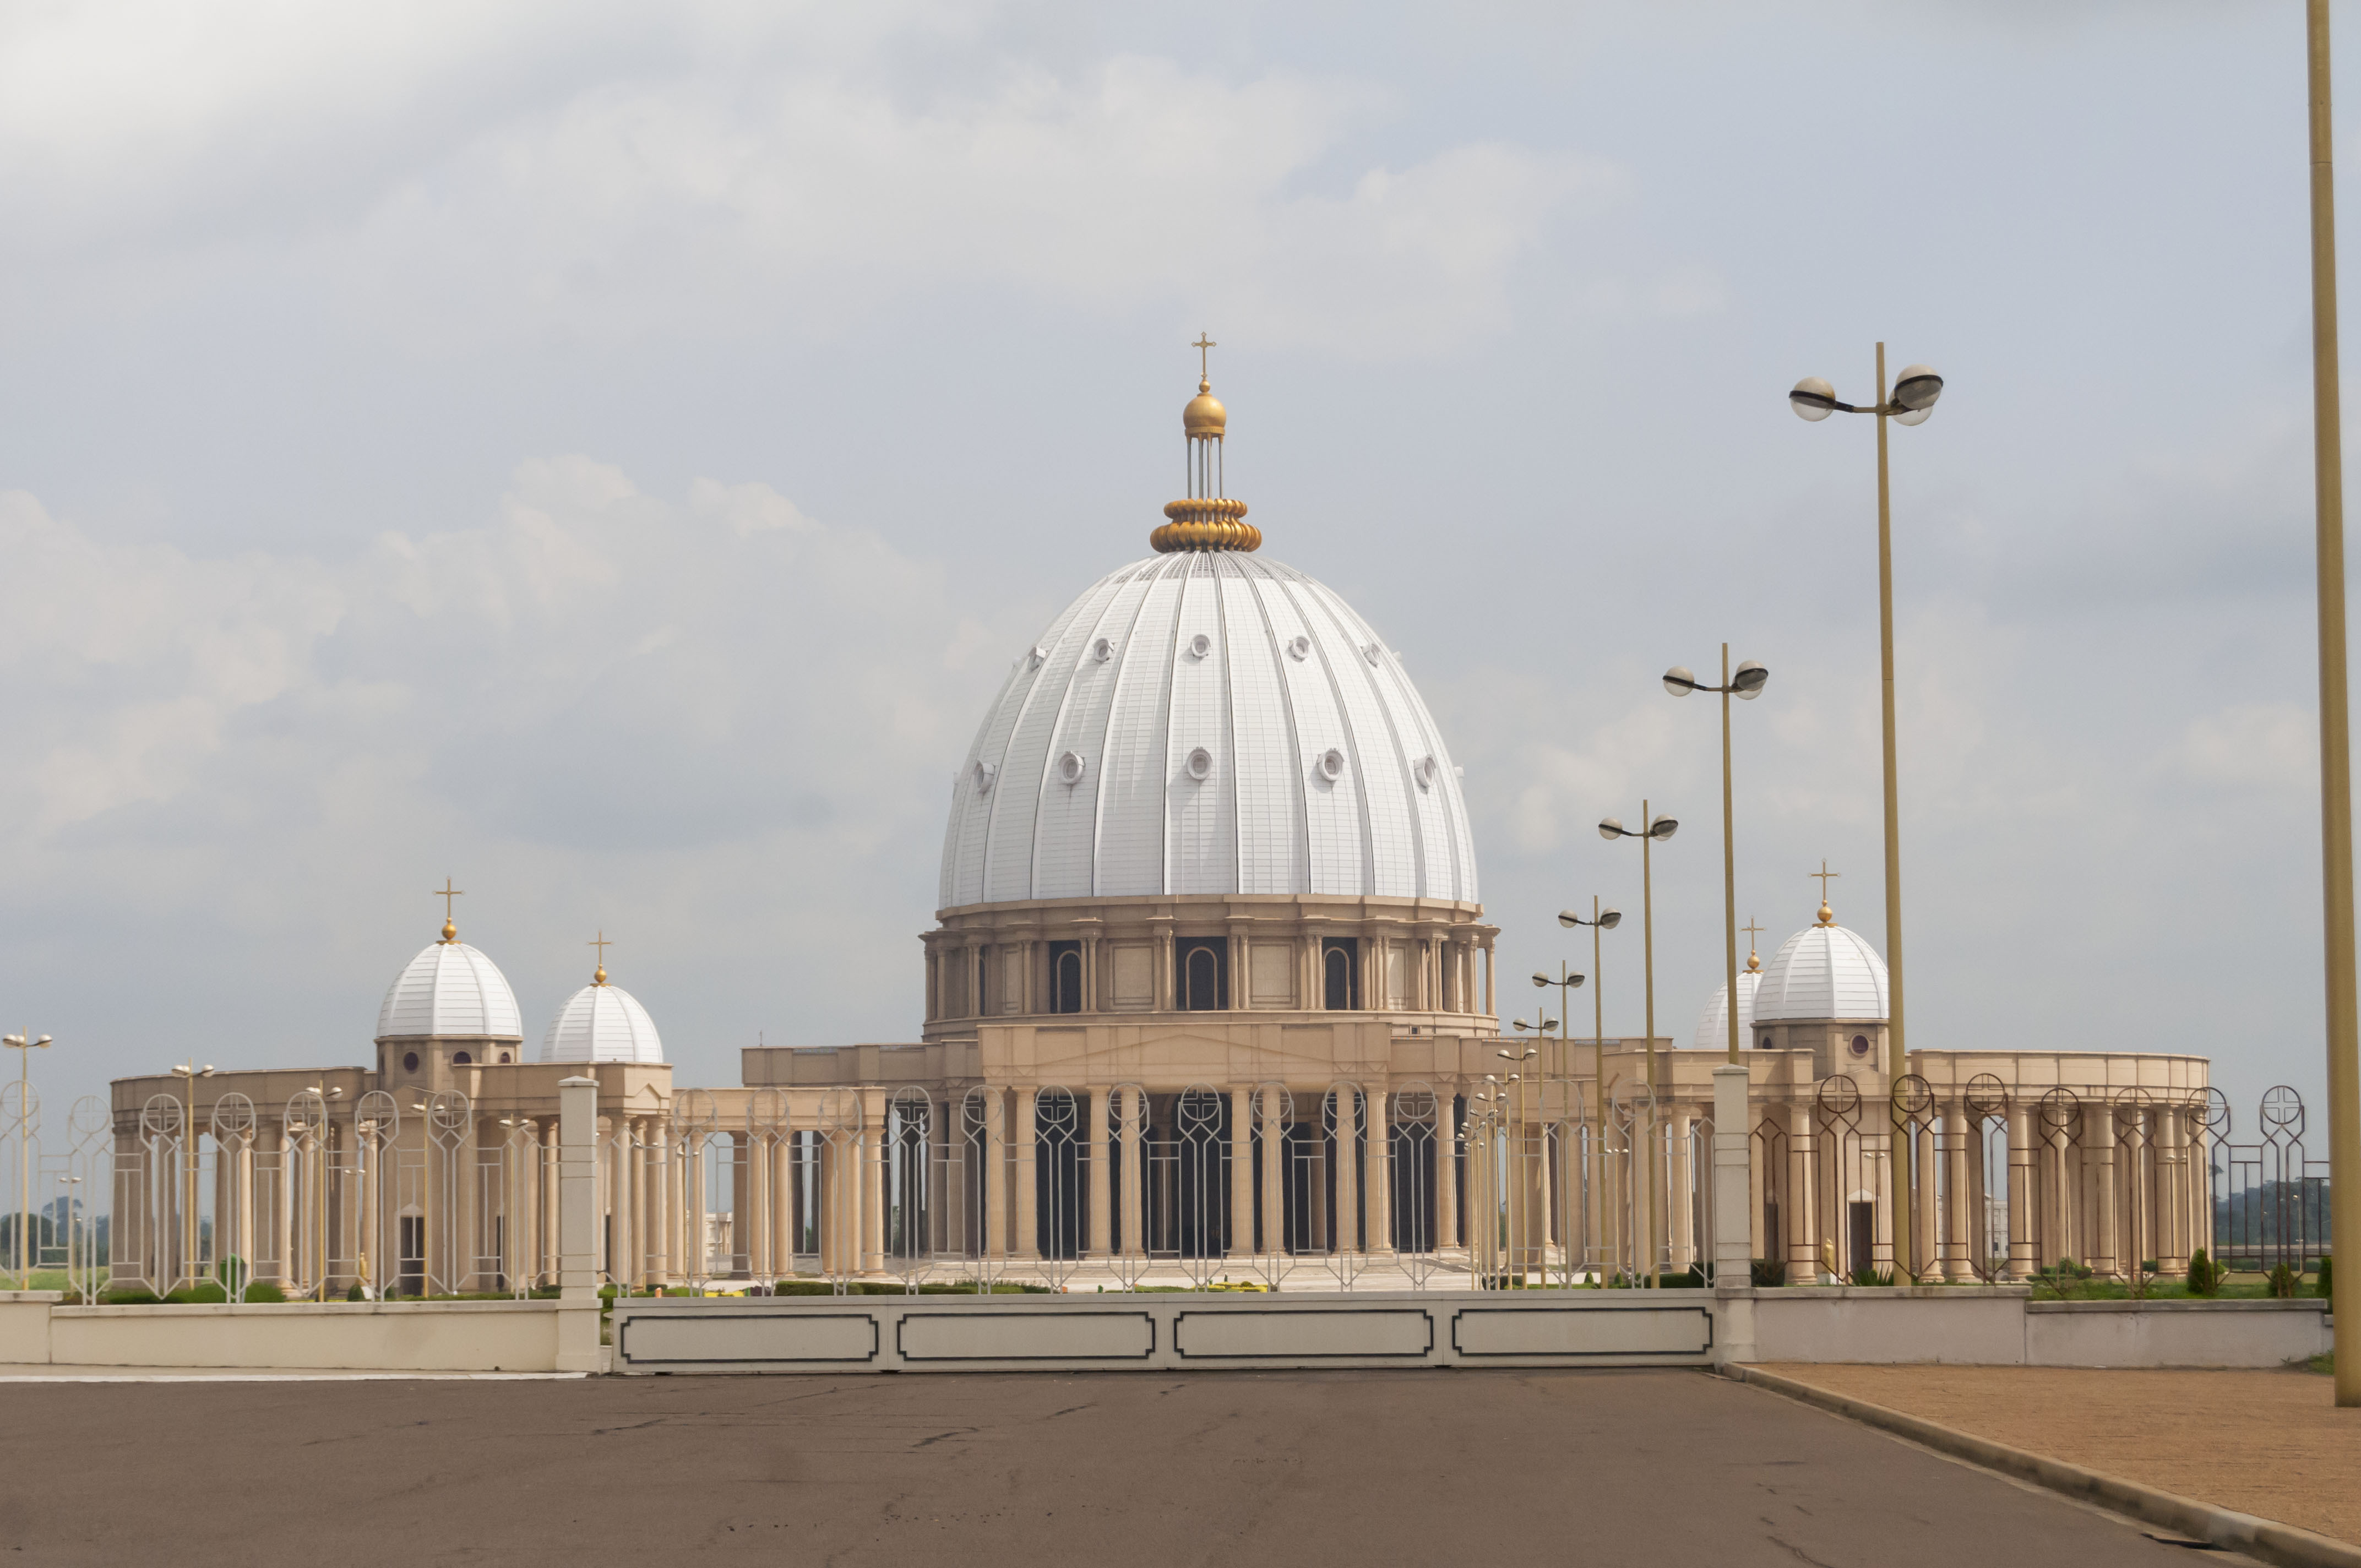 Catholic Basilica of Our Lady of Peace (Basilique Notre-Dame de la Paix) in Yamoussoukro, Cote d'Ivoire